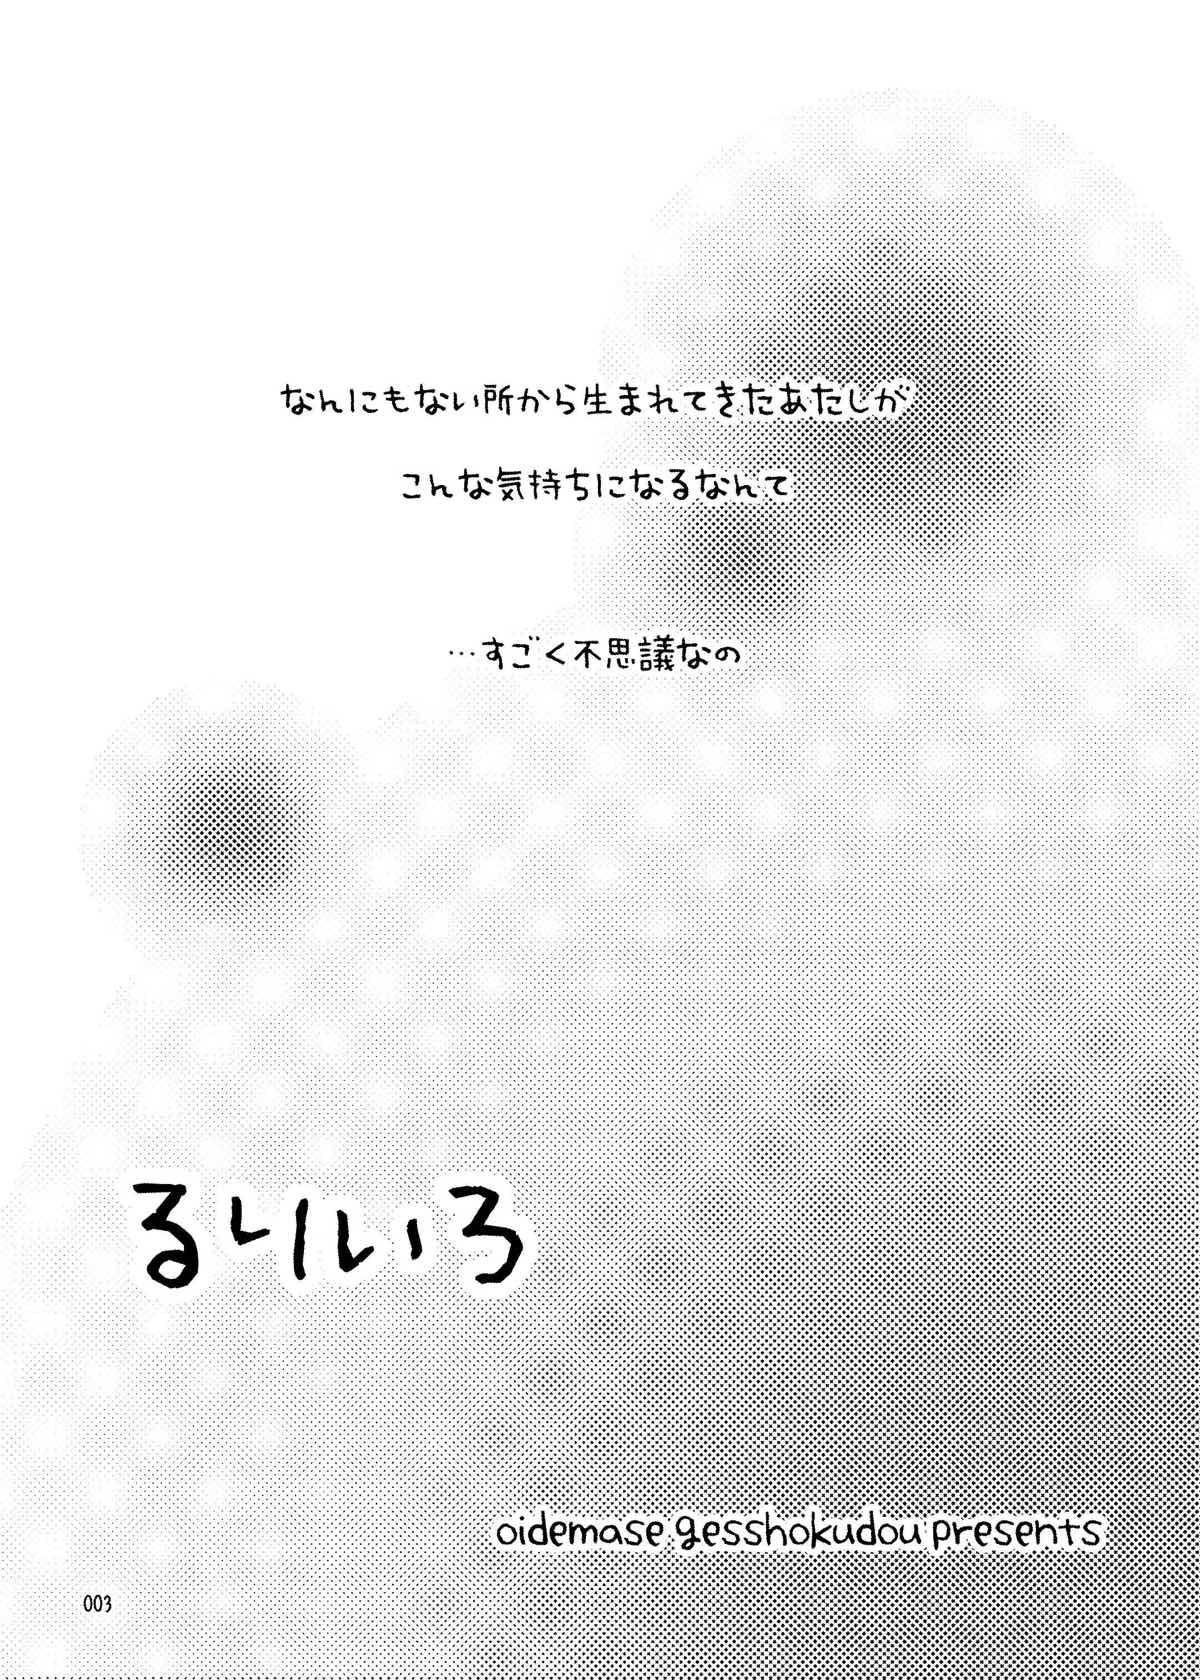 Action RURI-IRO - Celestial silfade story Bj - Page 3